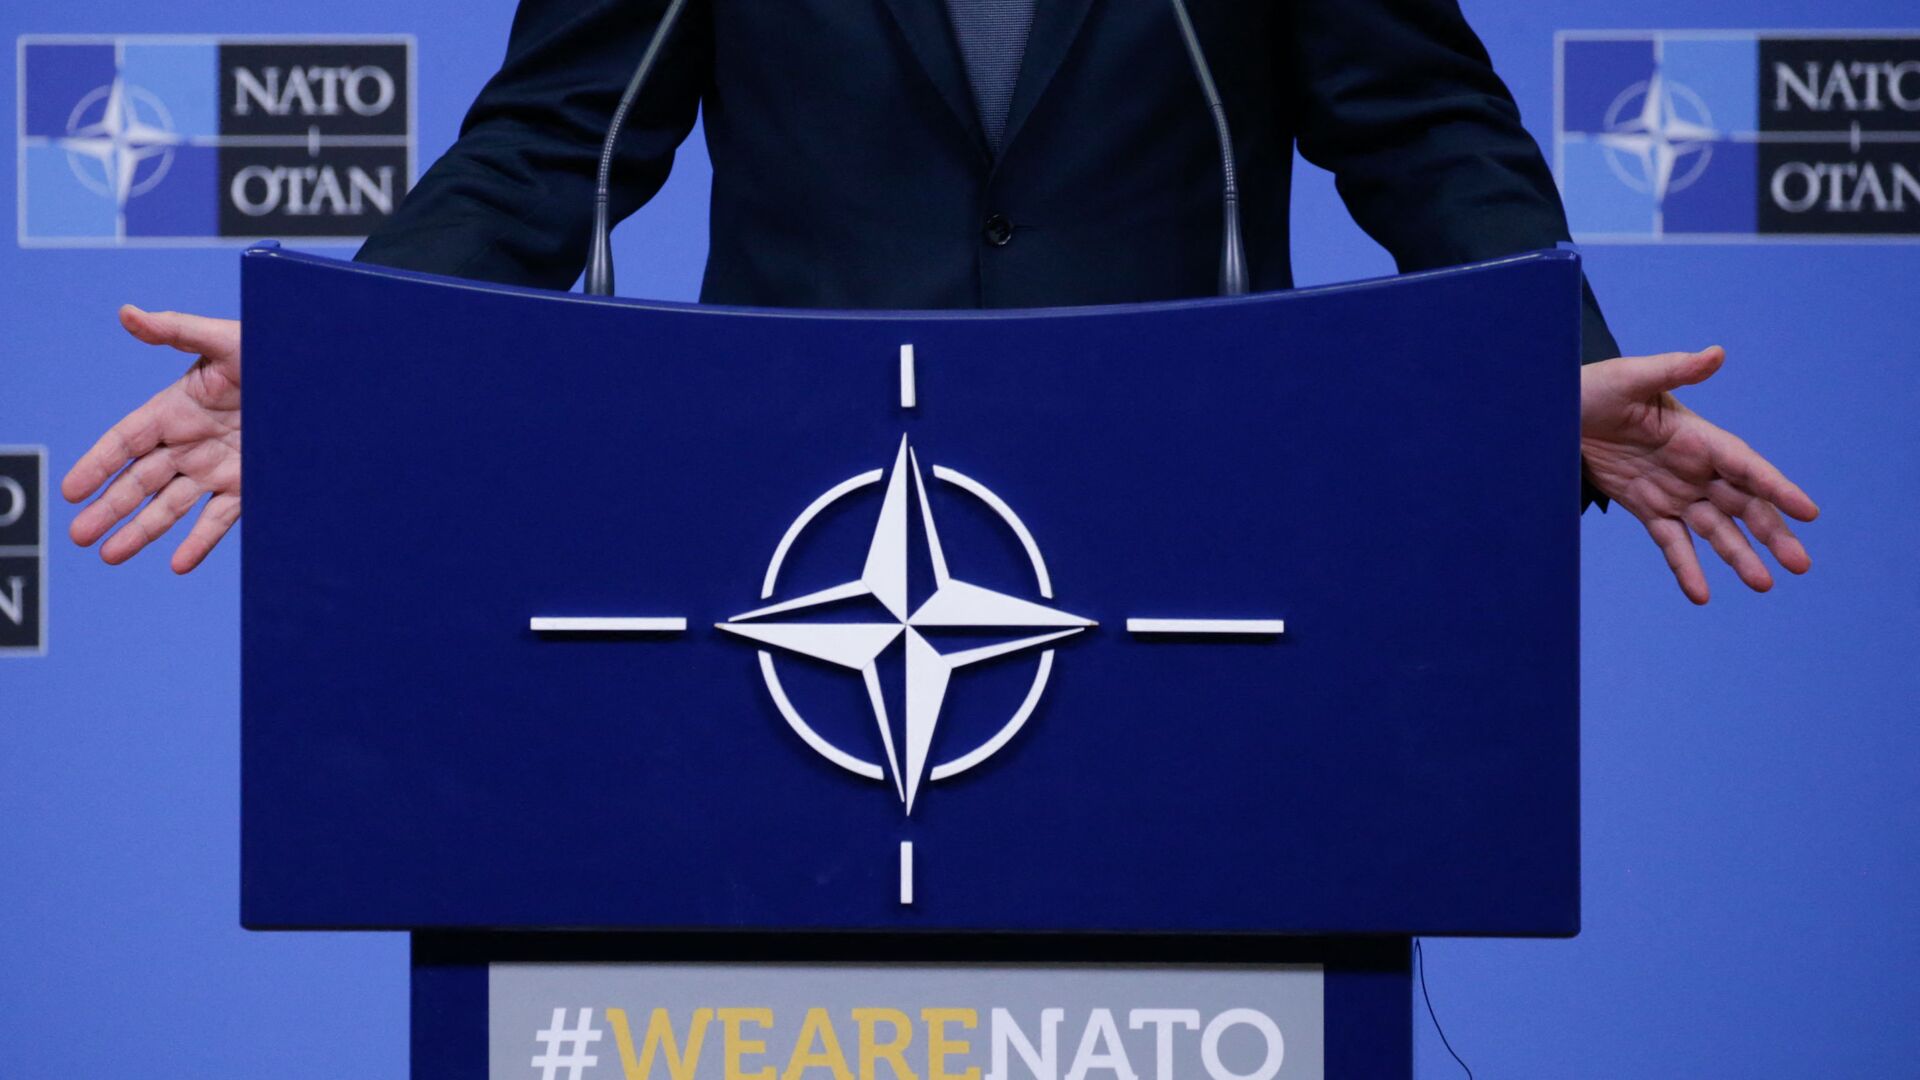 На фотографии изображен логотип НАТО, когда Генеральный секретарь НАТО Йенс Столтенберг проводит пресс-конференцию во время встречи министров обороны НАТО в Брюсселе 13 февраля 2020 г - Sputnik Аҧсны, 1920, 27.12.2021